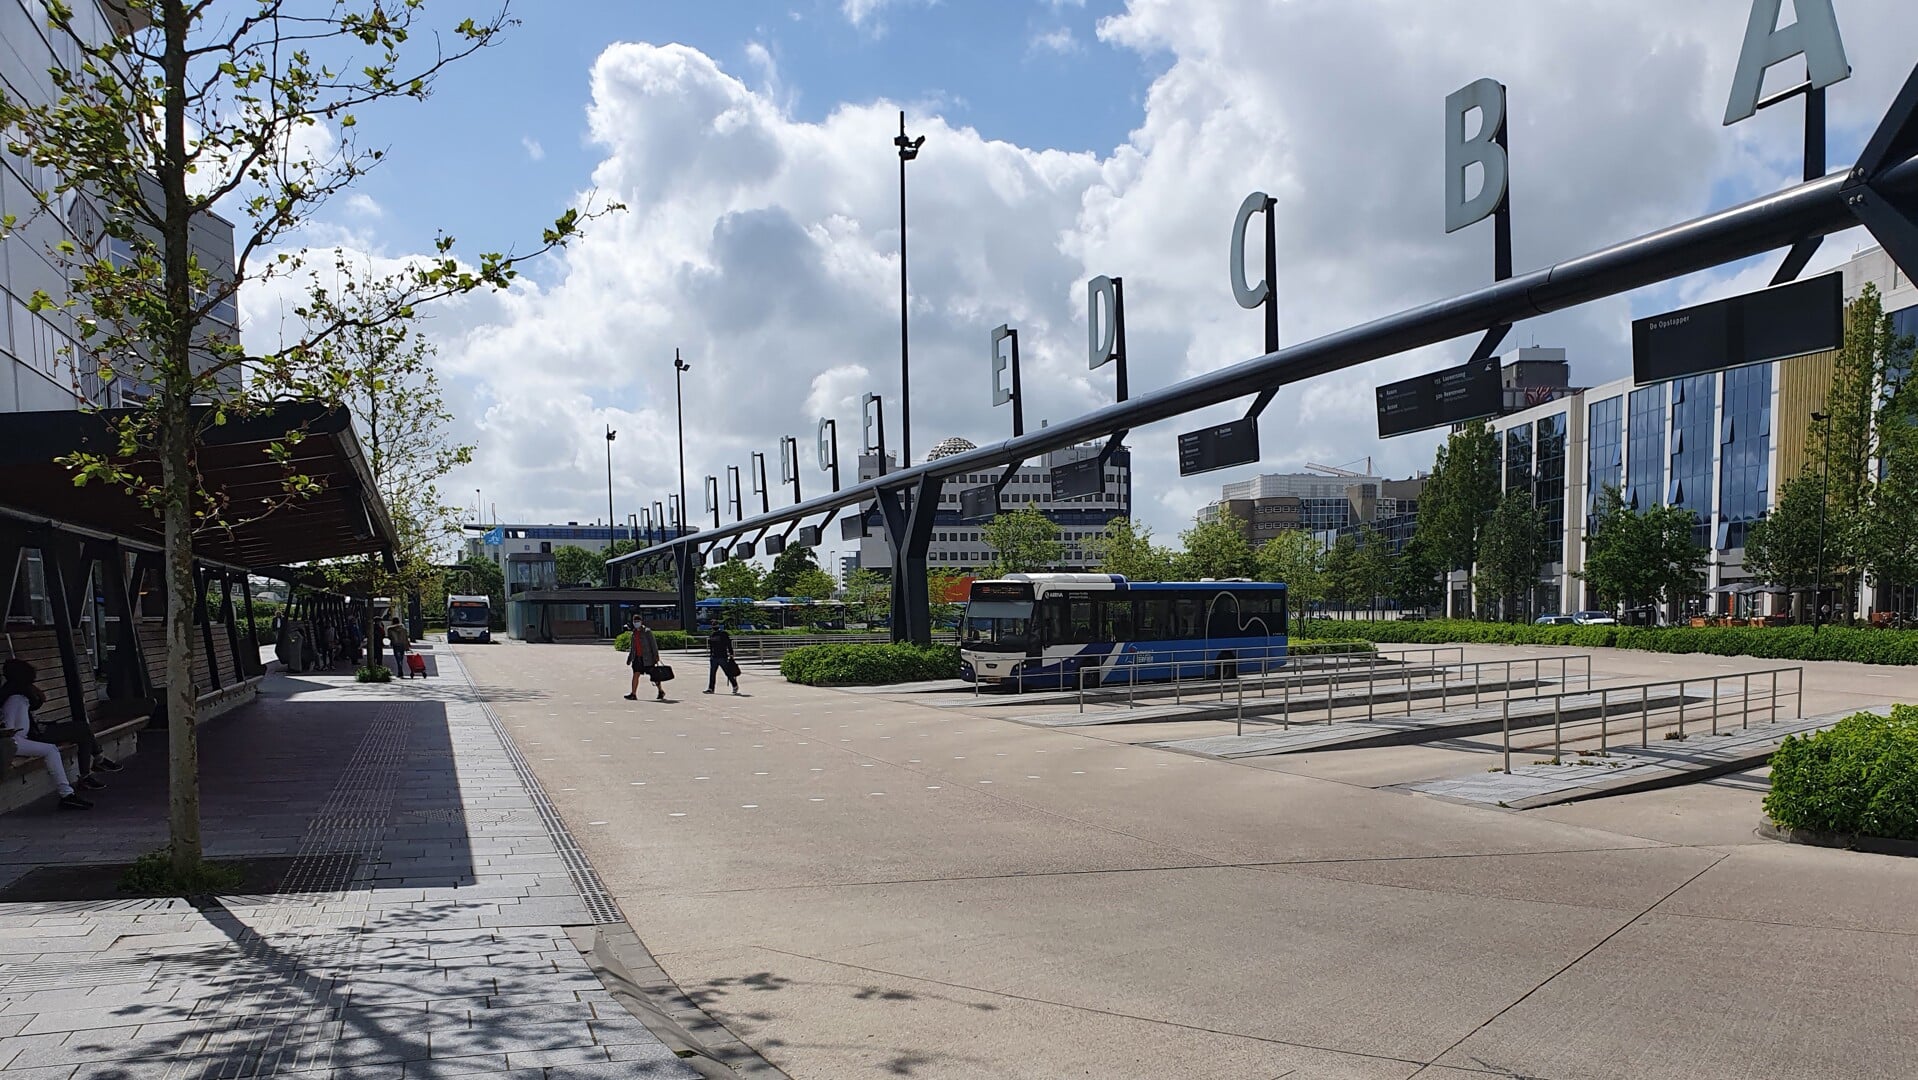 Steeds meer mensen positief over openbaar vervoer in Friesland